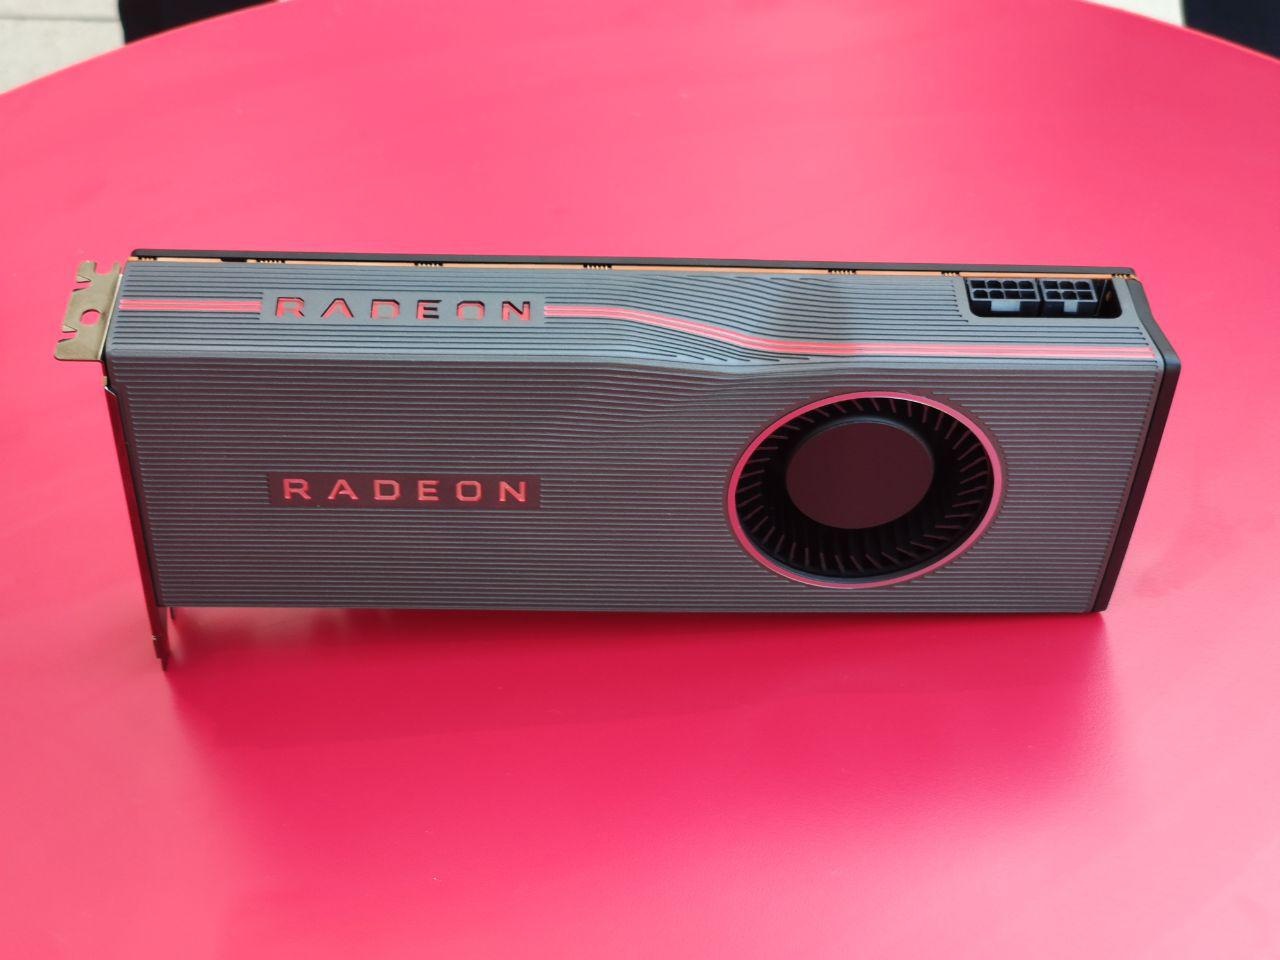 Видеокарты AMD Radeon RX 5700 XT и RX 5700 представлены официально (Обновлено)